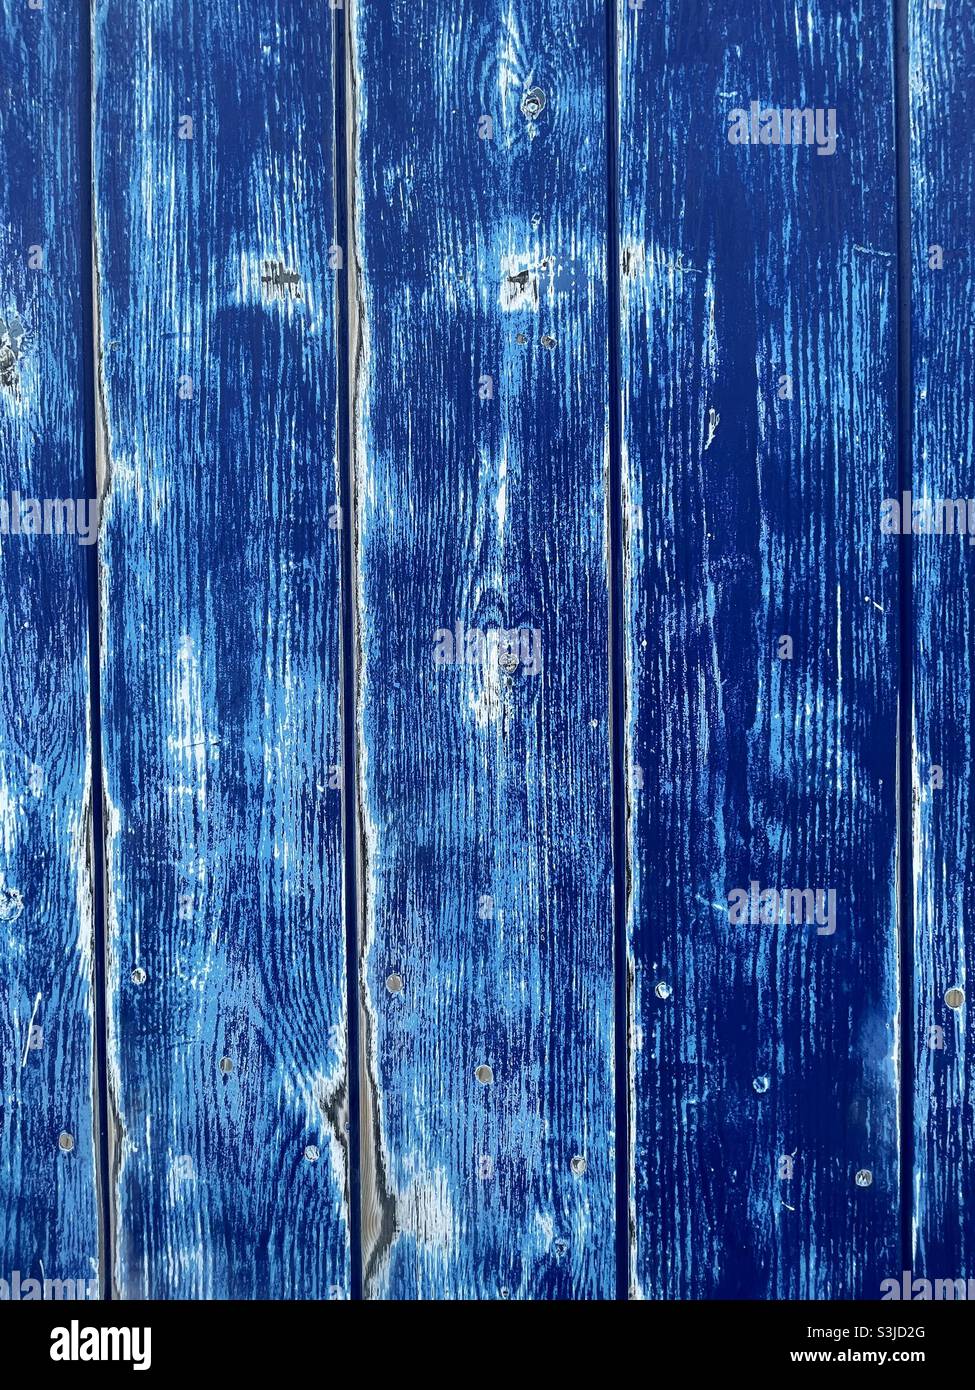 Planches en bois bleu délavé et décoloré. Banque D'Images